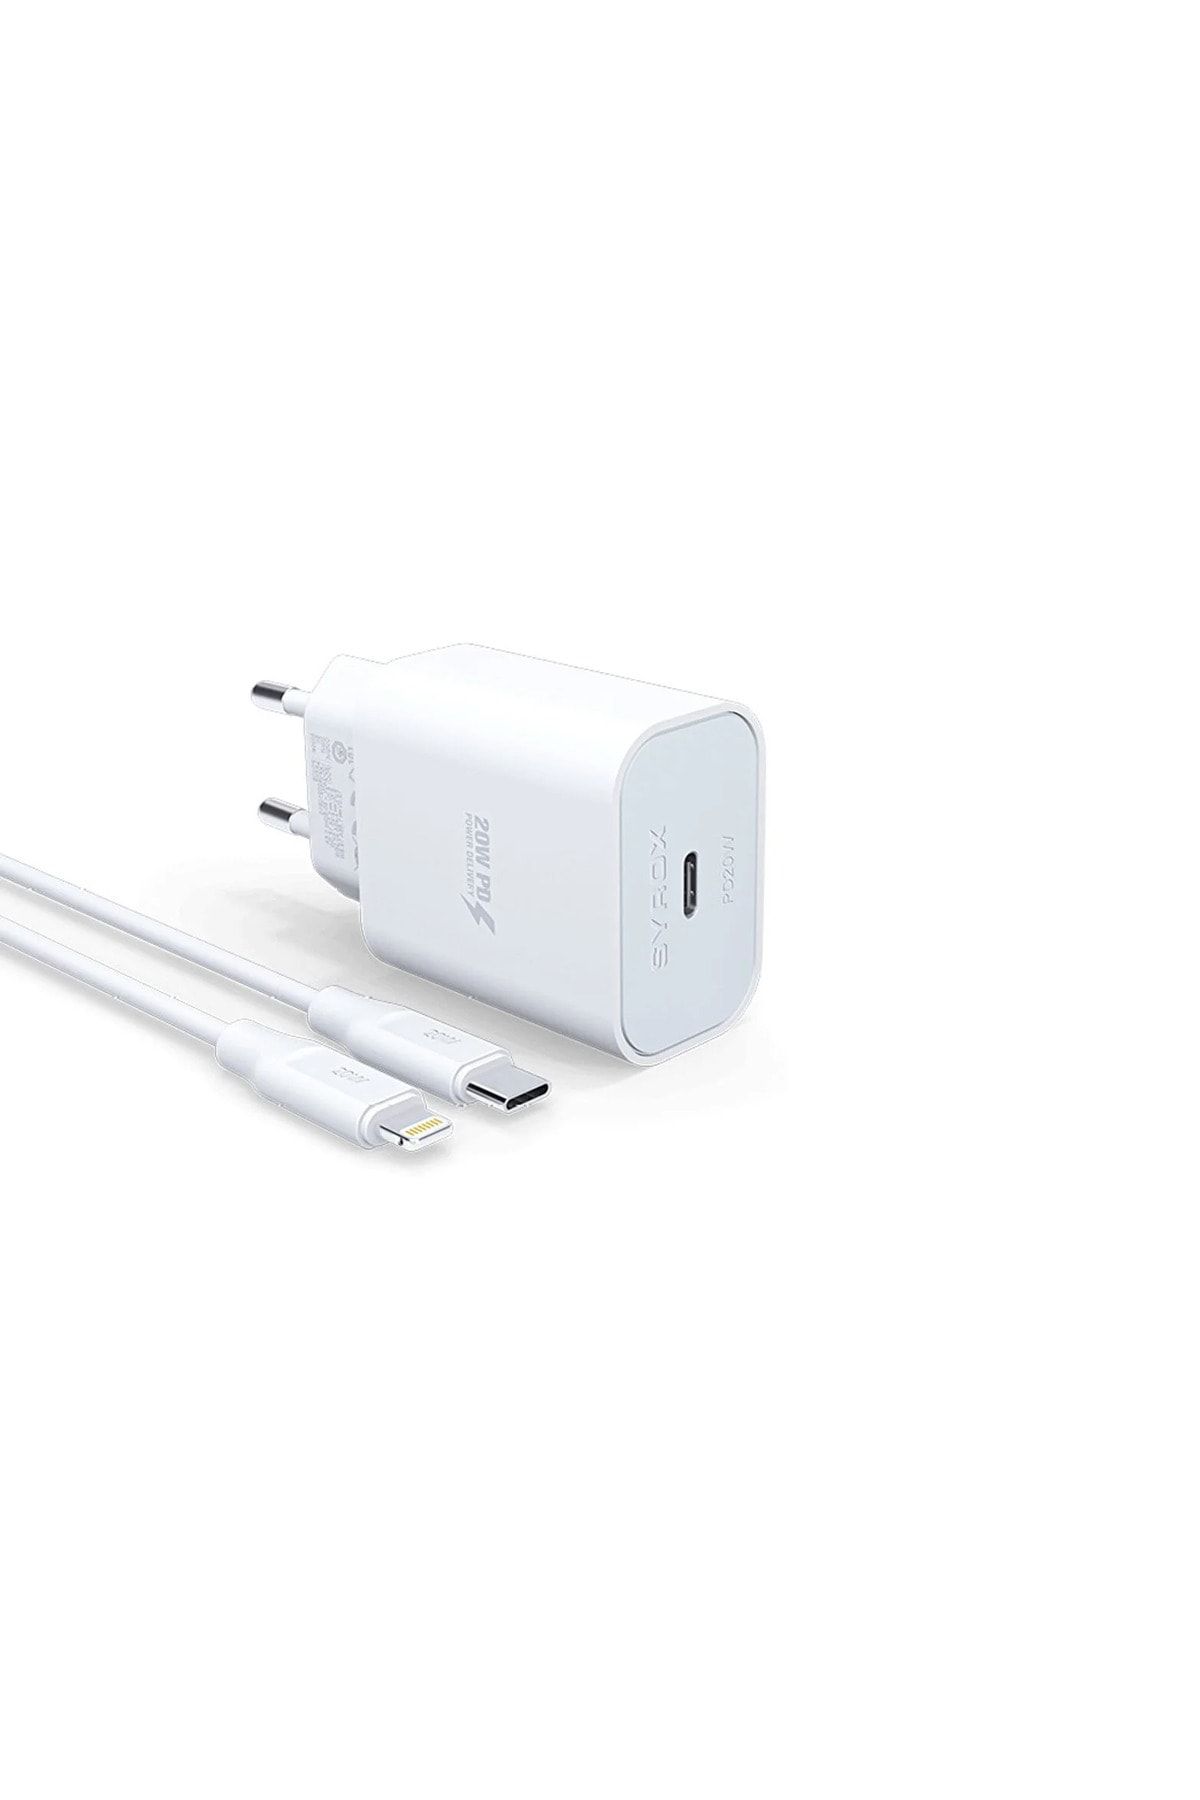 Syrox Apple Iphone 14 Uyumlu Hızlı Şarj Cihazı Lightning 20w Şarj Aleti Seti